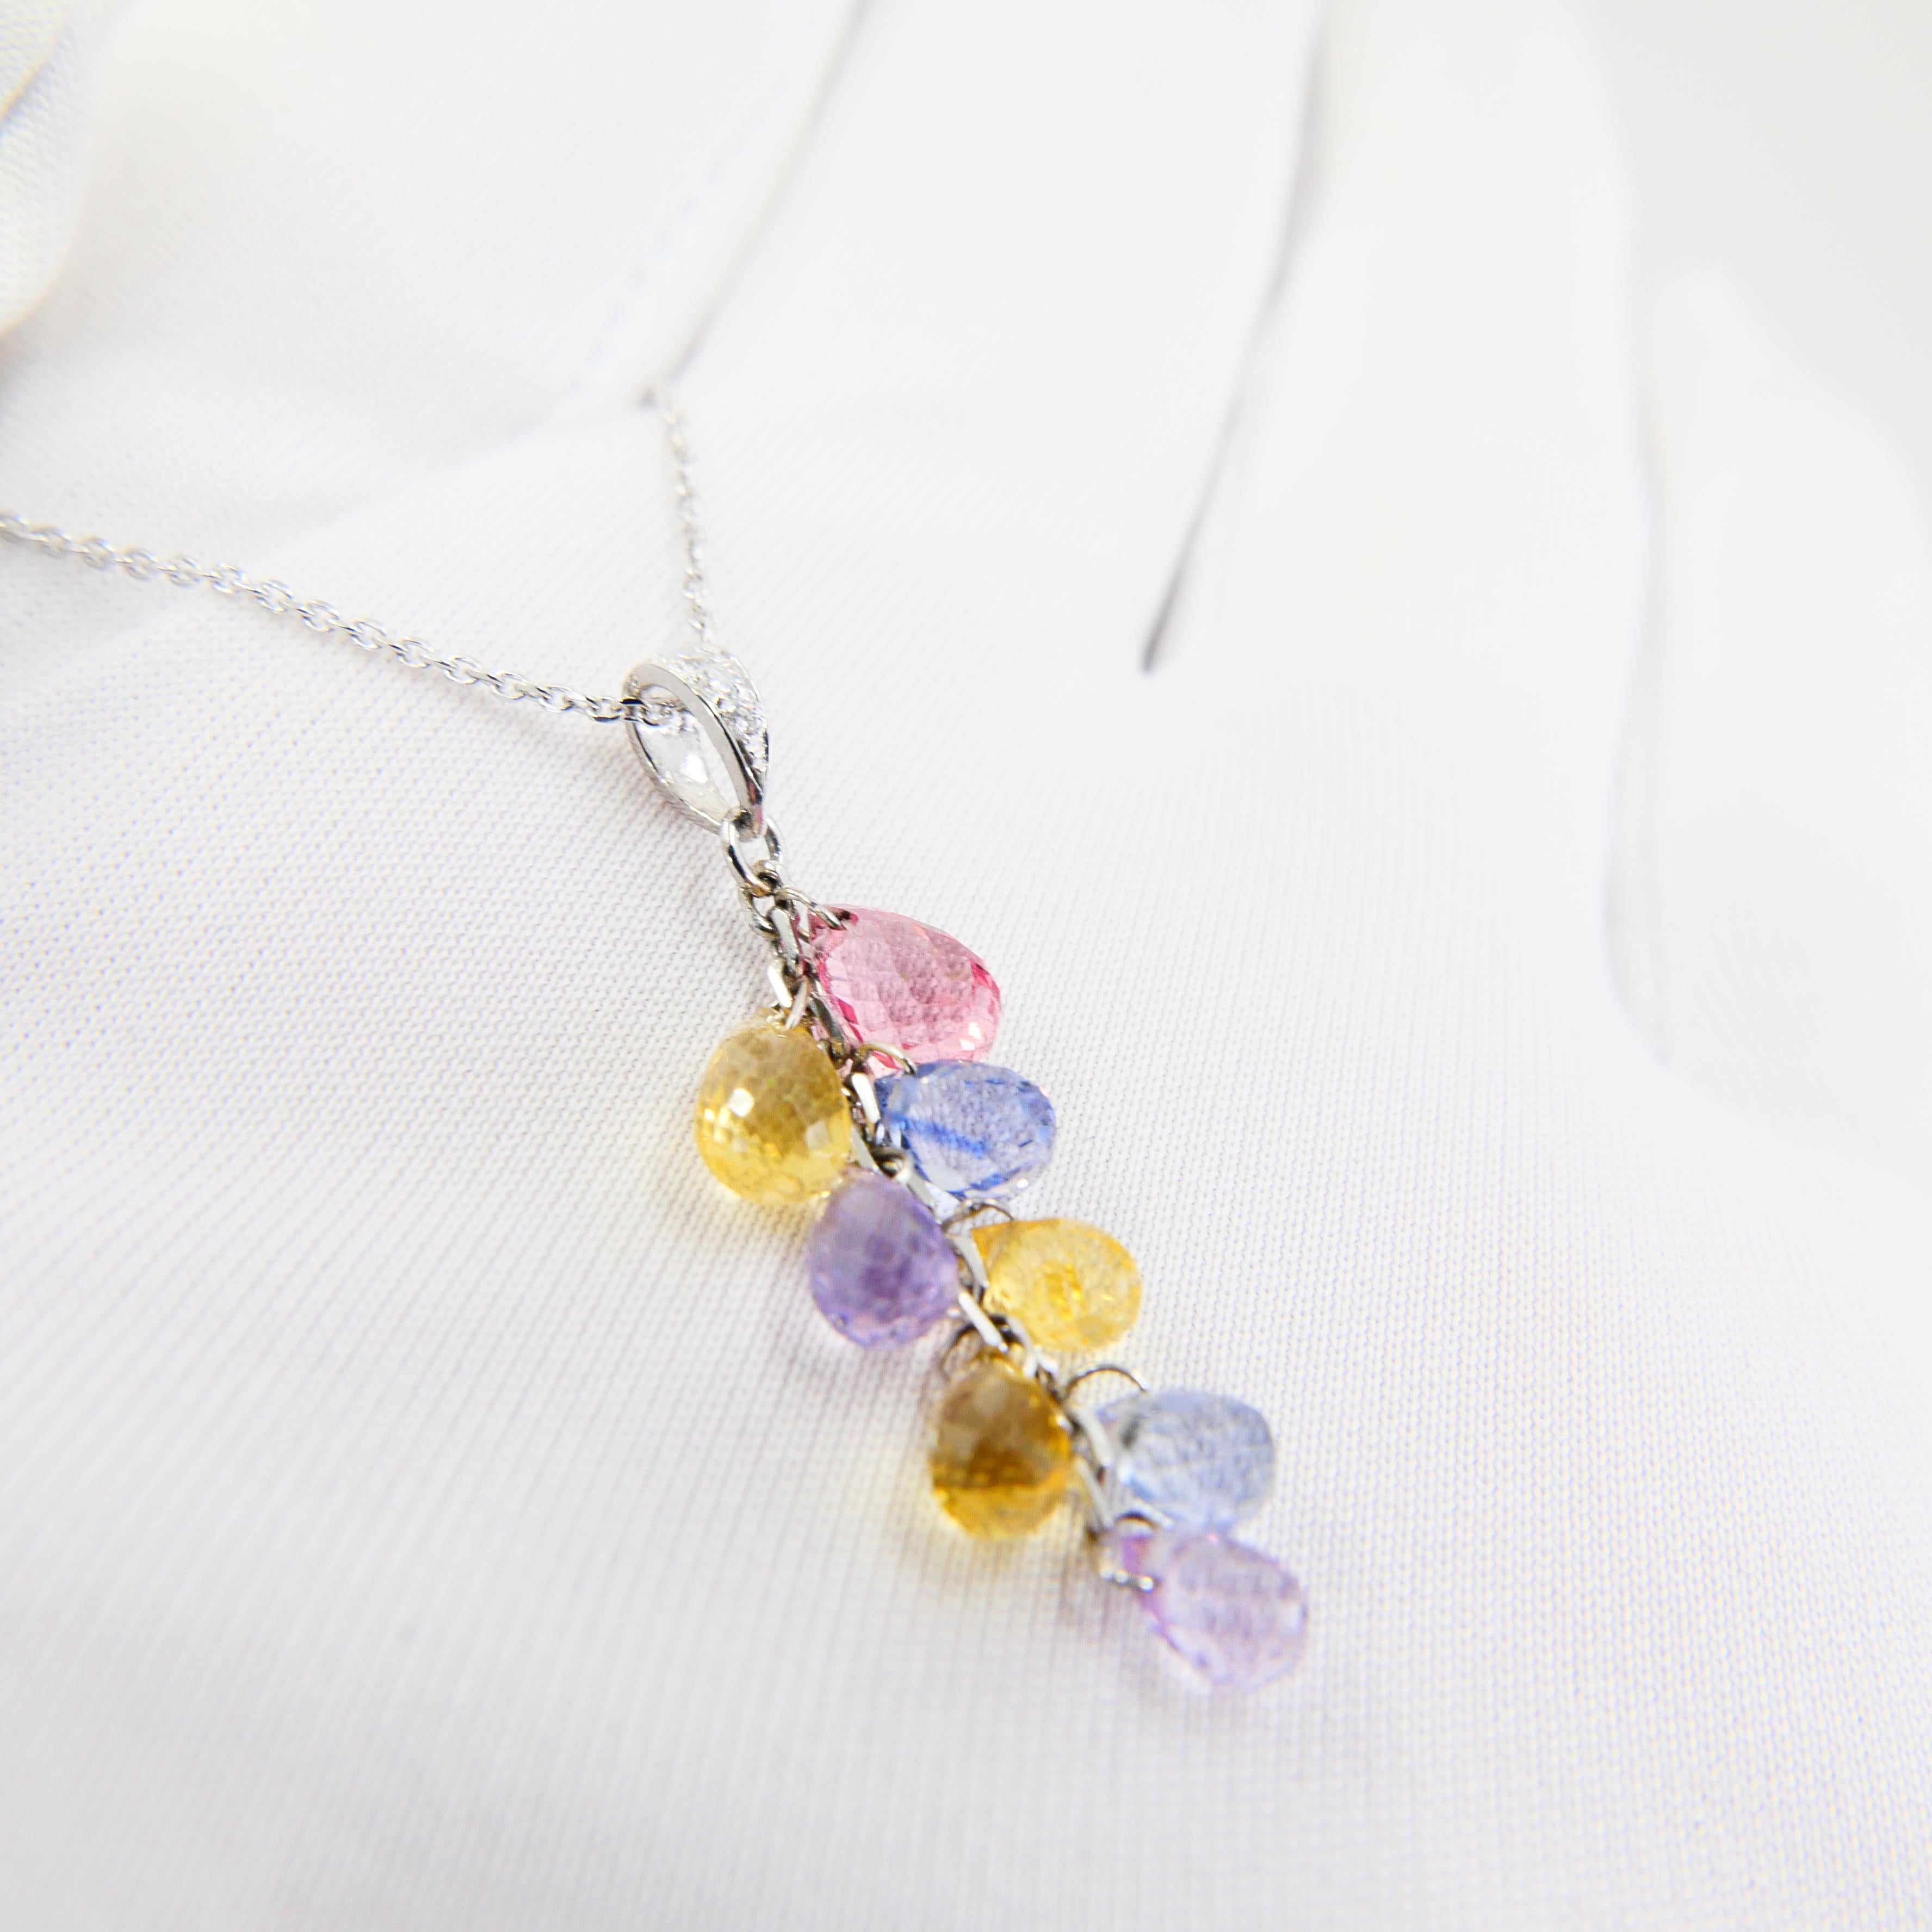 Muti Colored Briolette Cut Sapphires & Diamond Pendant Drop Necklace For Sale 8